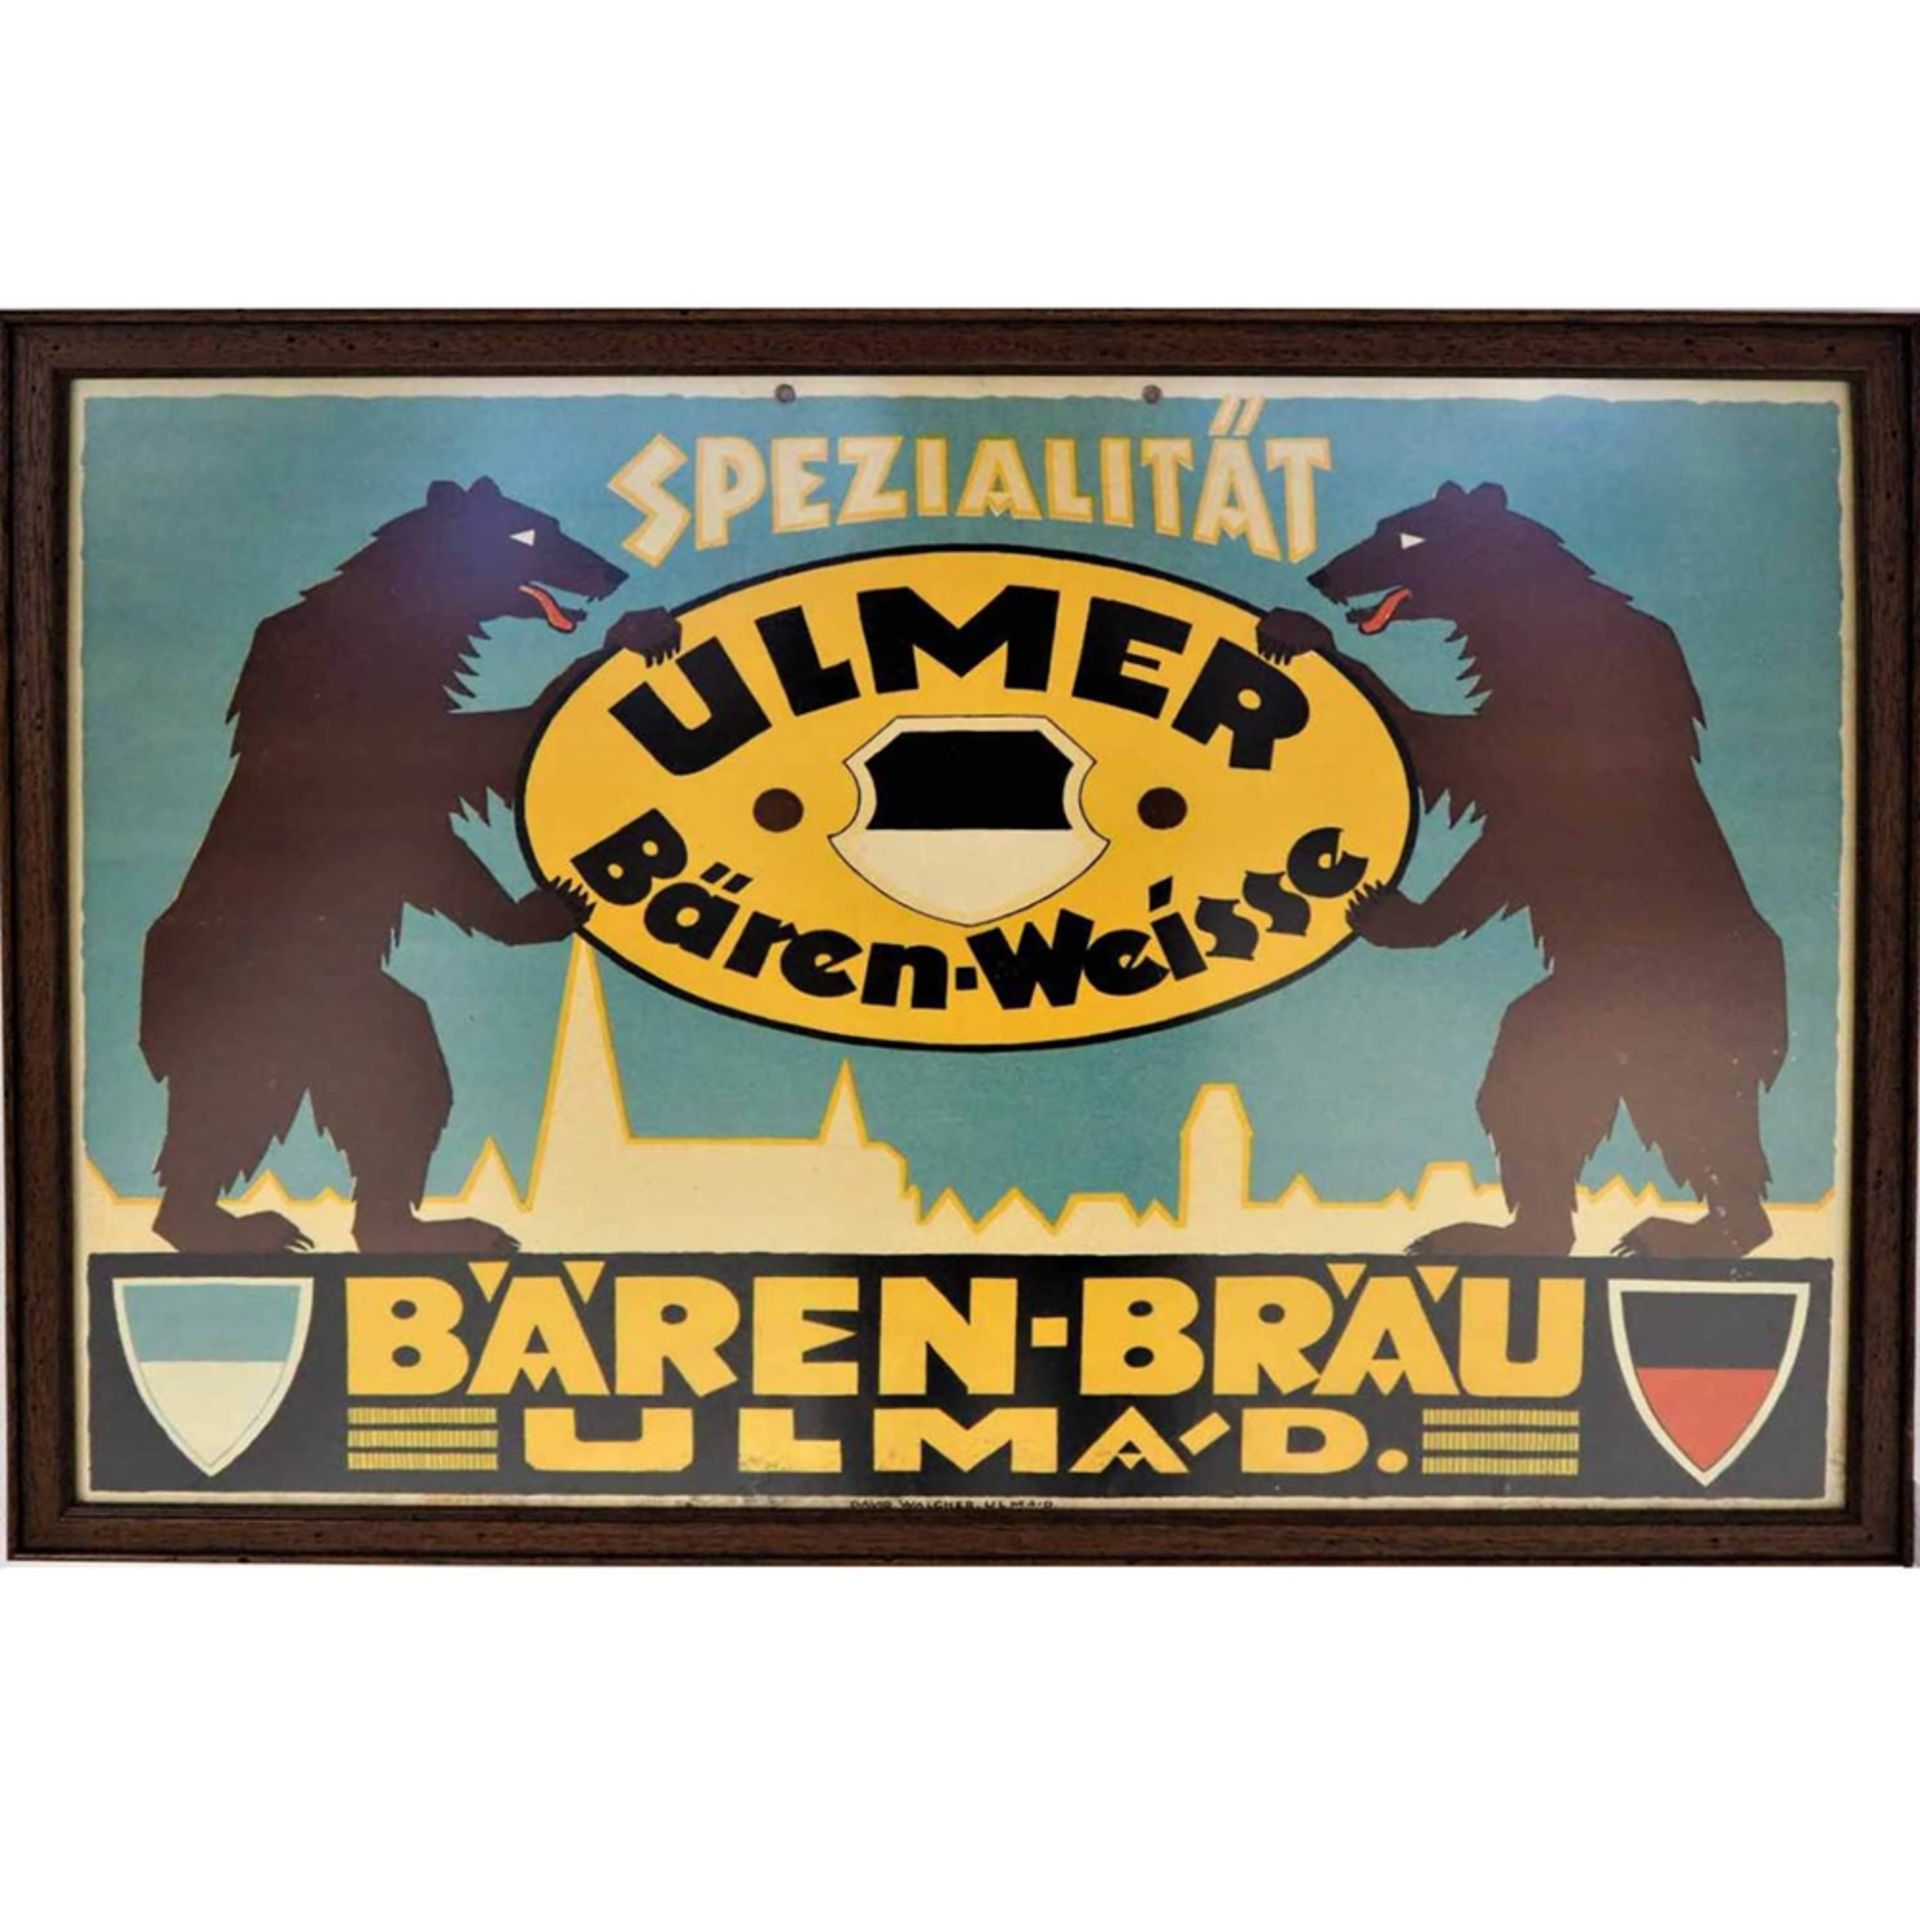 Bierwerbung Ulm, um 1930Lithographie auf Karton, um 1930, gerahmt unter Glas. "Spezialit